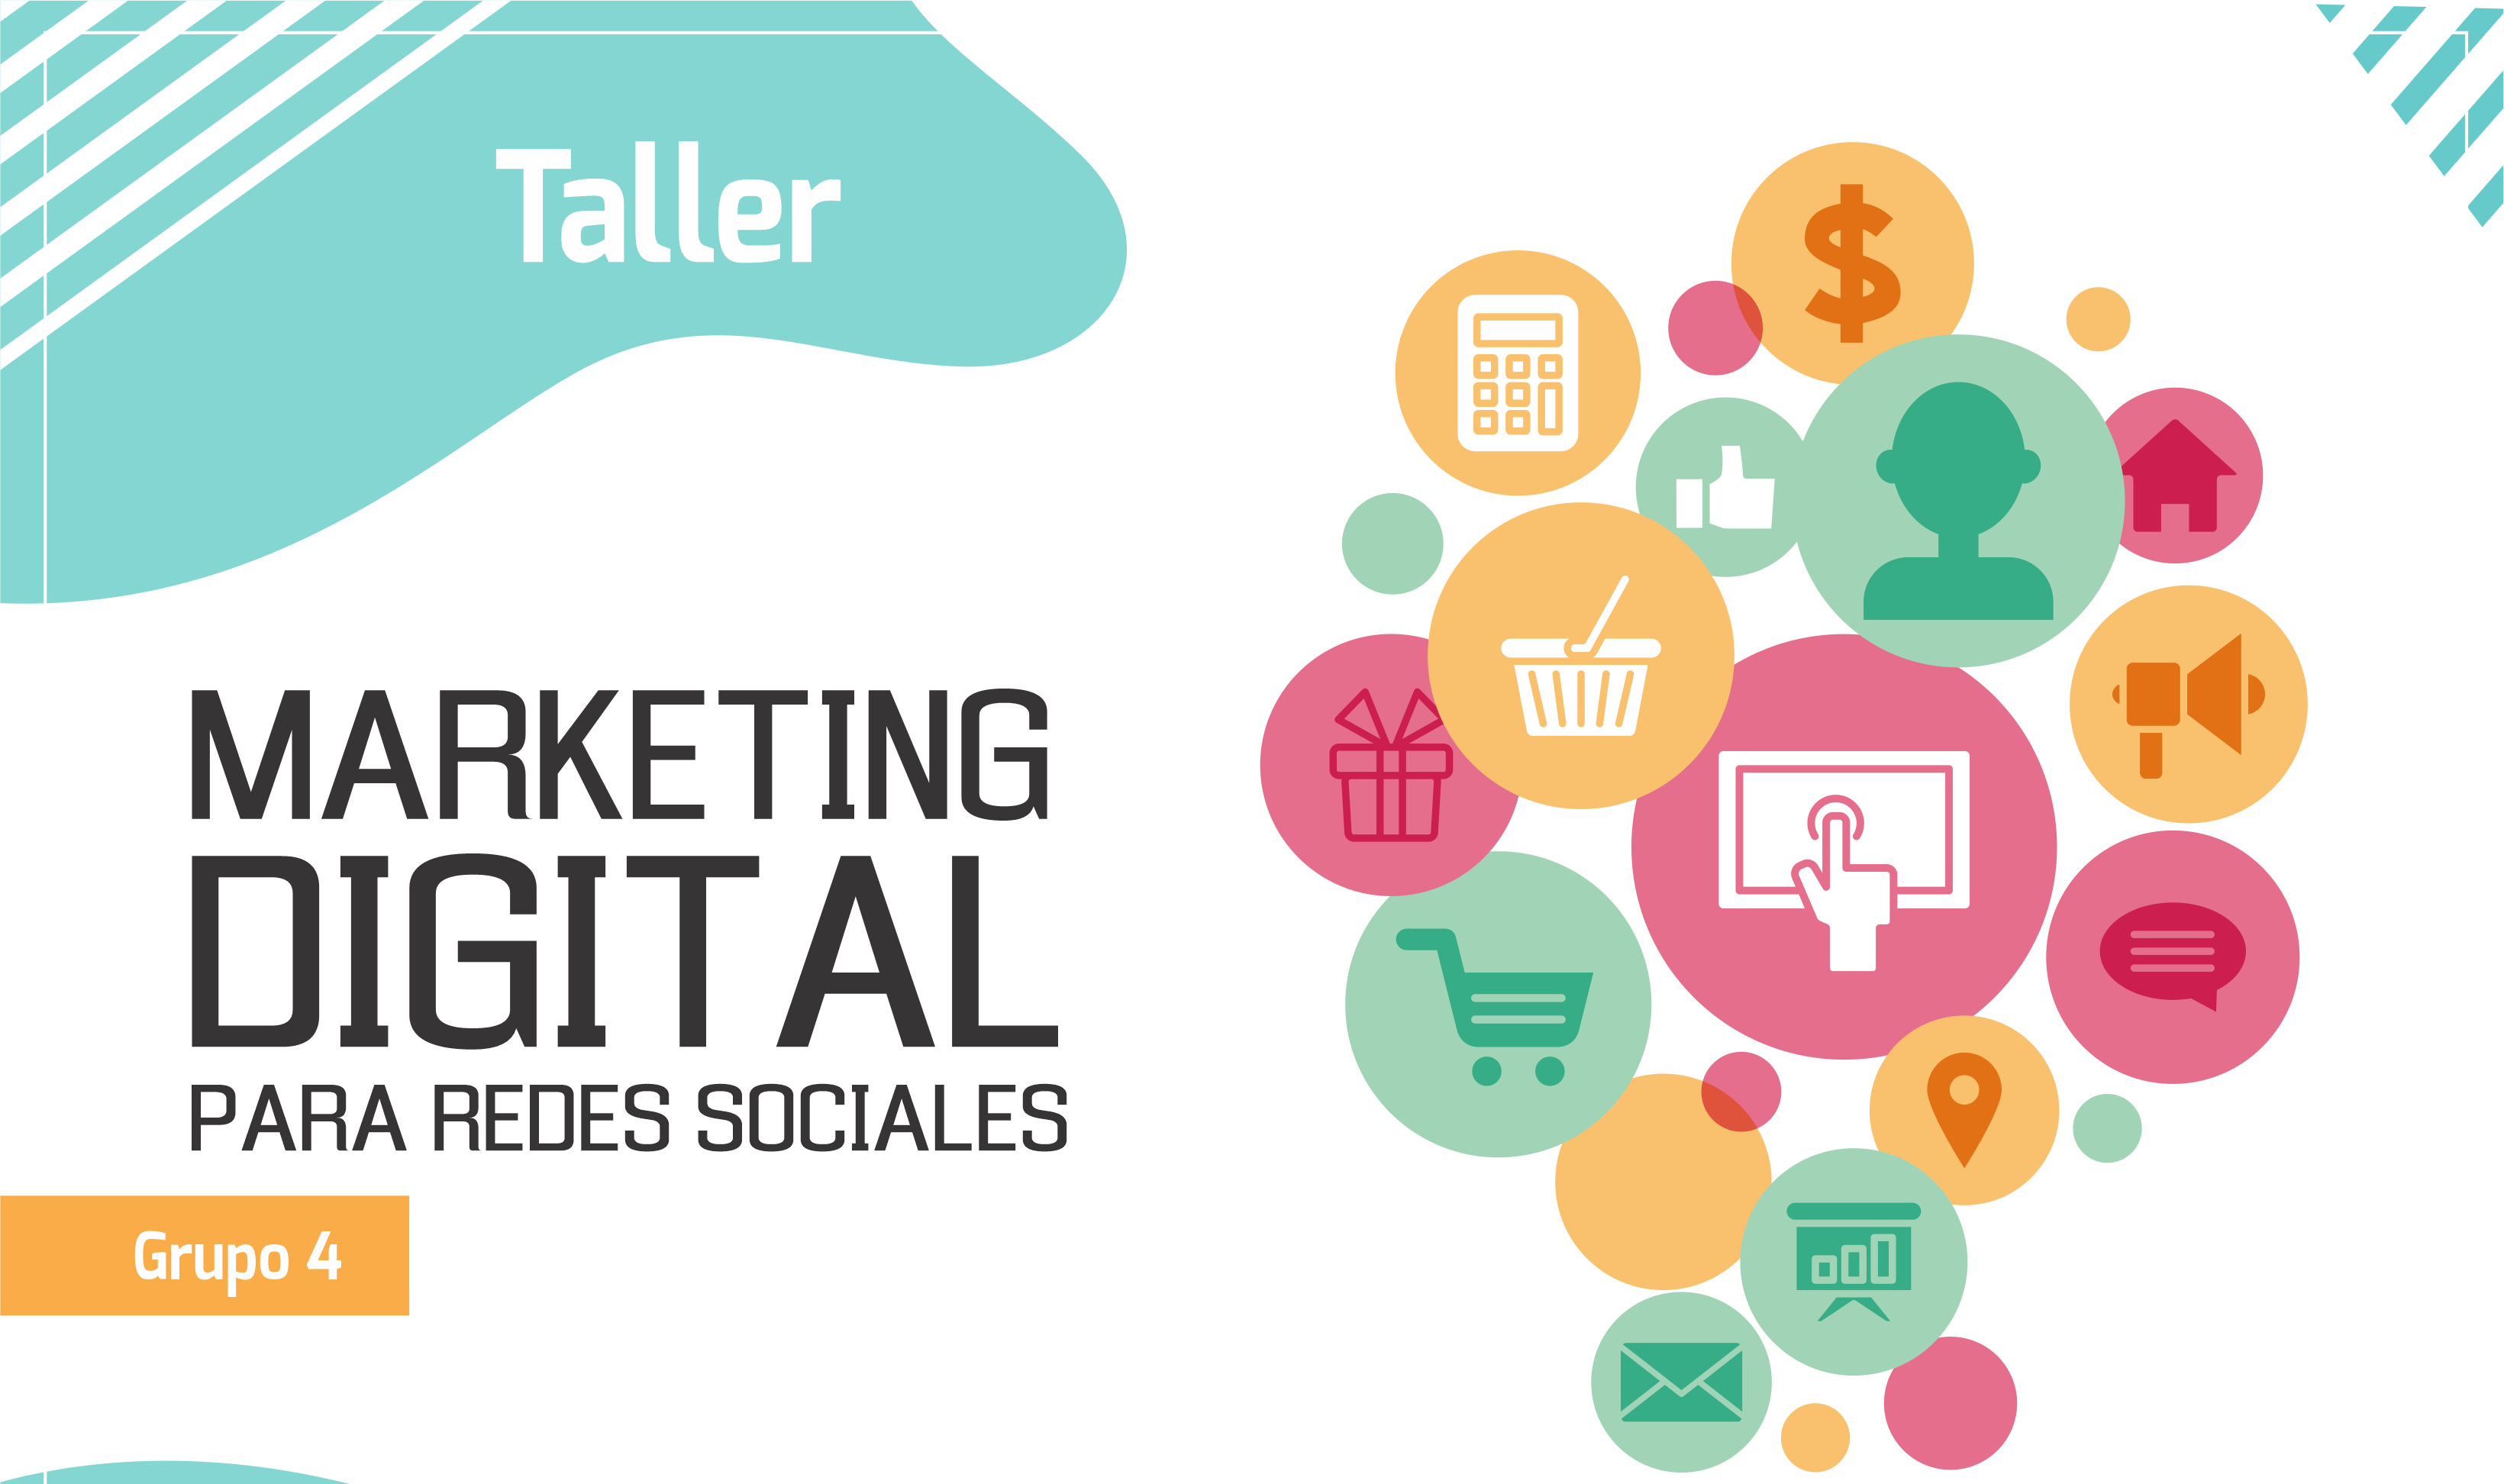 Marketing Digital para Redes Sociales